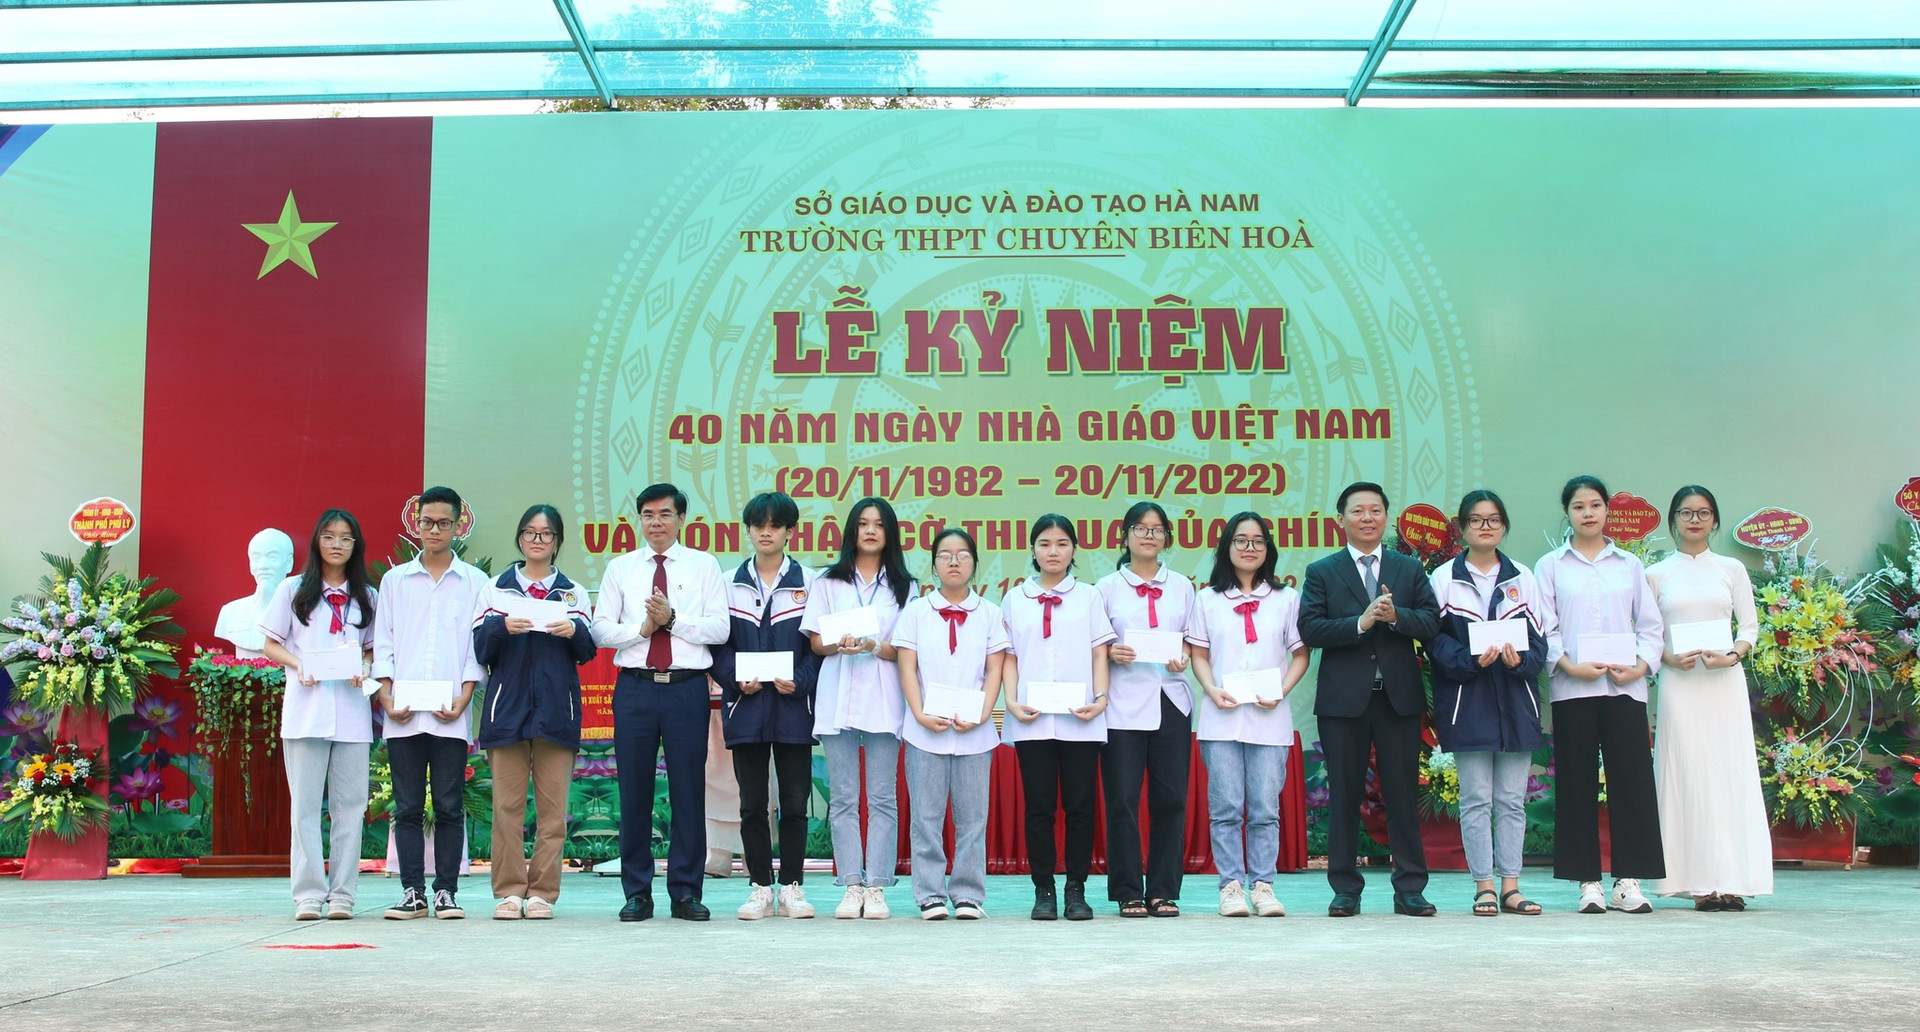 Trao học bổng Nguyễn Thái Bình tại ngôi trường có 200 học sinh giỏi quốc gia - ảnh 3